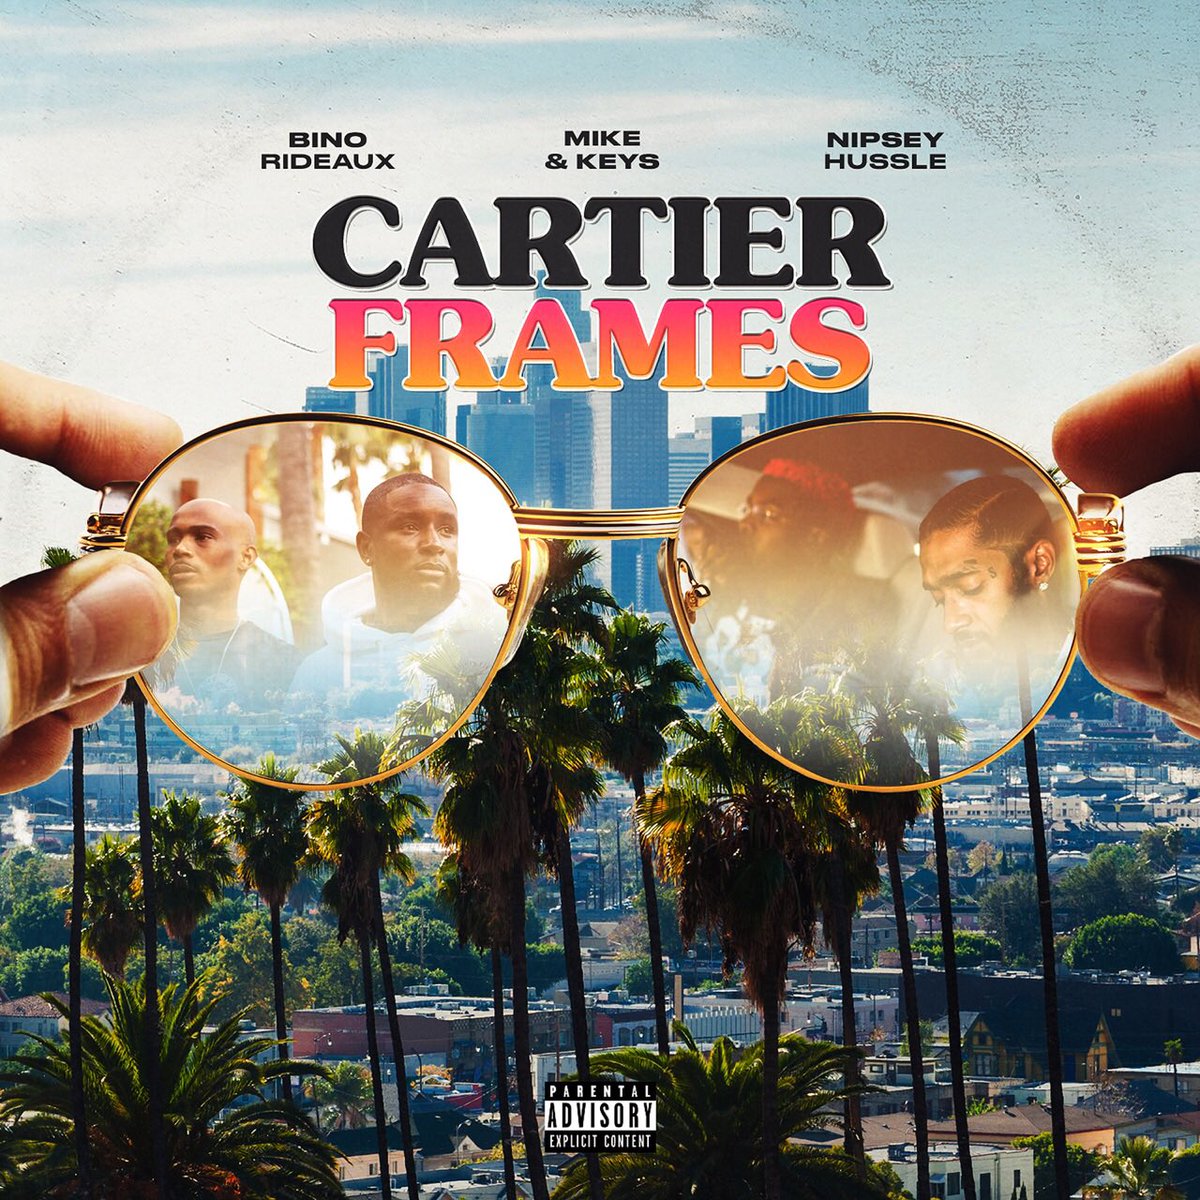 New Music: Bino Rideaux x Mike & Keys – “Cartier Frames” Feat. Nipsey Hussle [LISTEN]